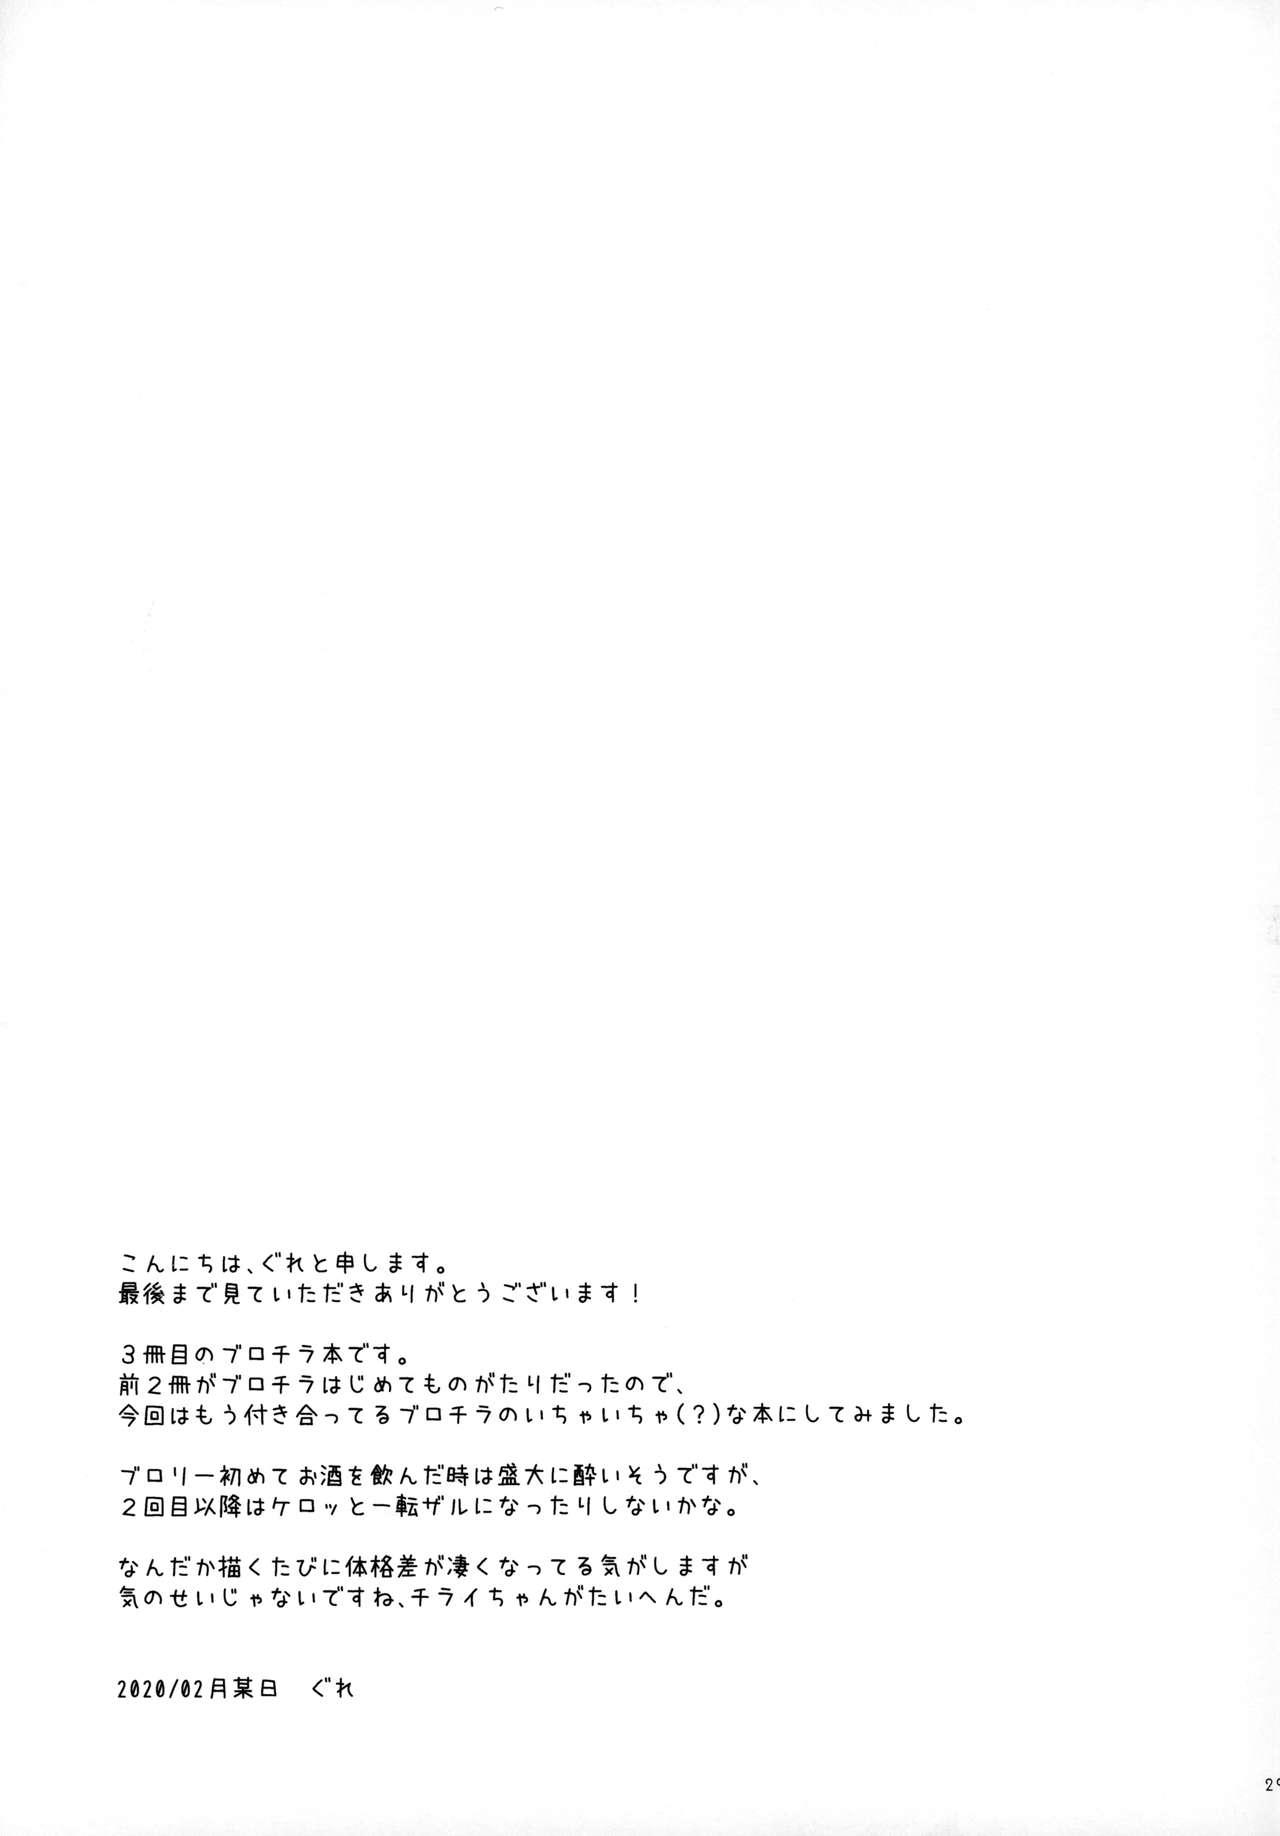 Amateur Porn Free Osake wa Hatachi ni Natte kara! - Dragon ball super Sex Toy - Page 28